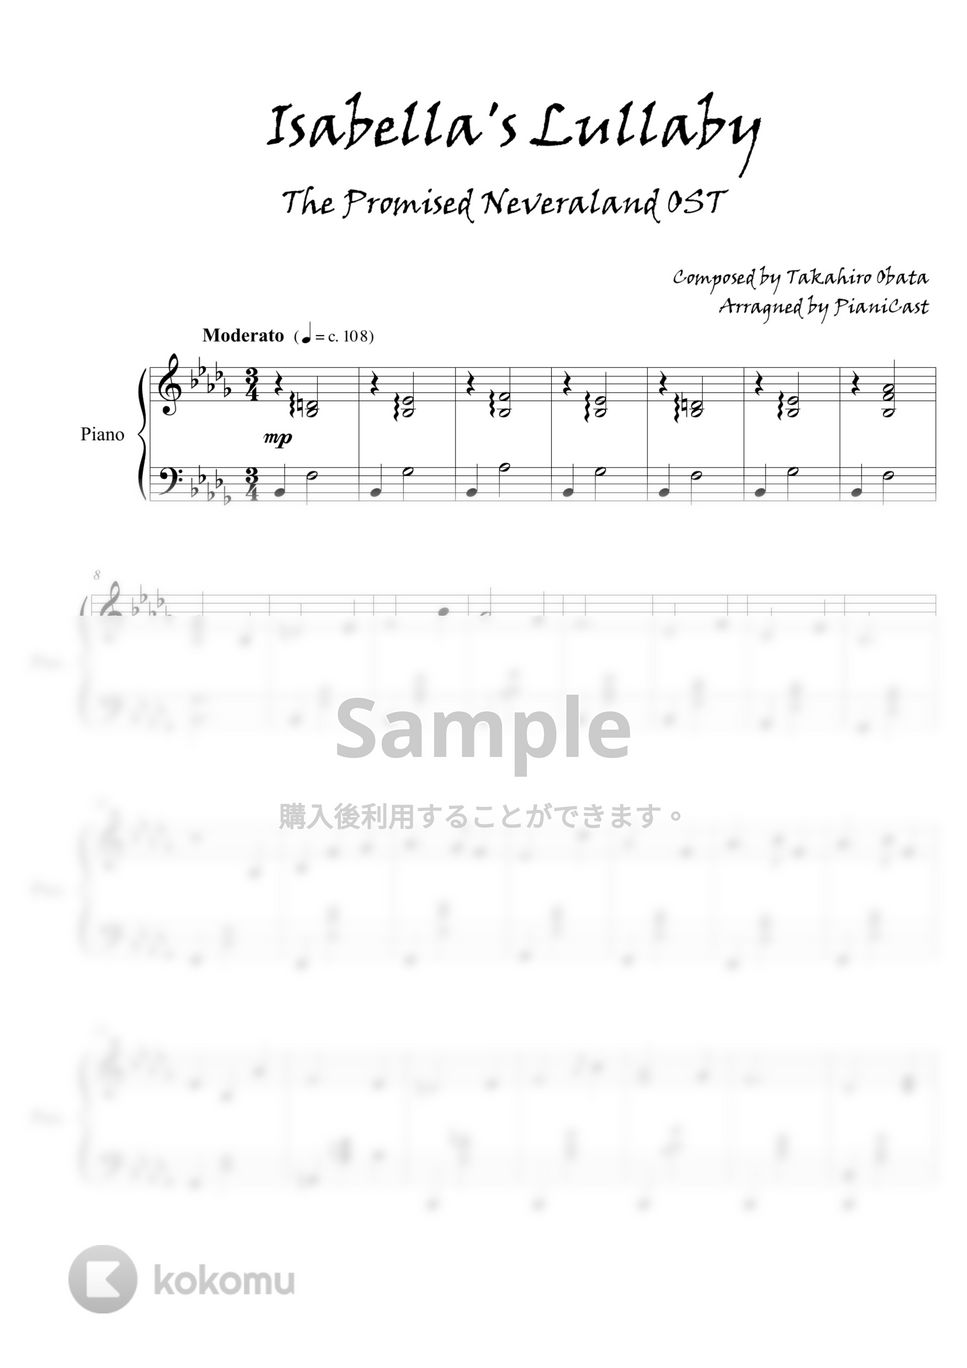 約束のネバーランド - イザベラの唄 by Pianicast